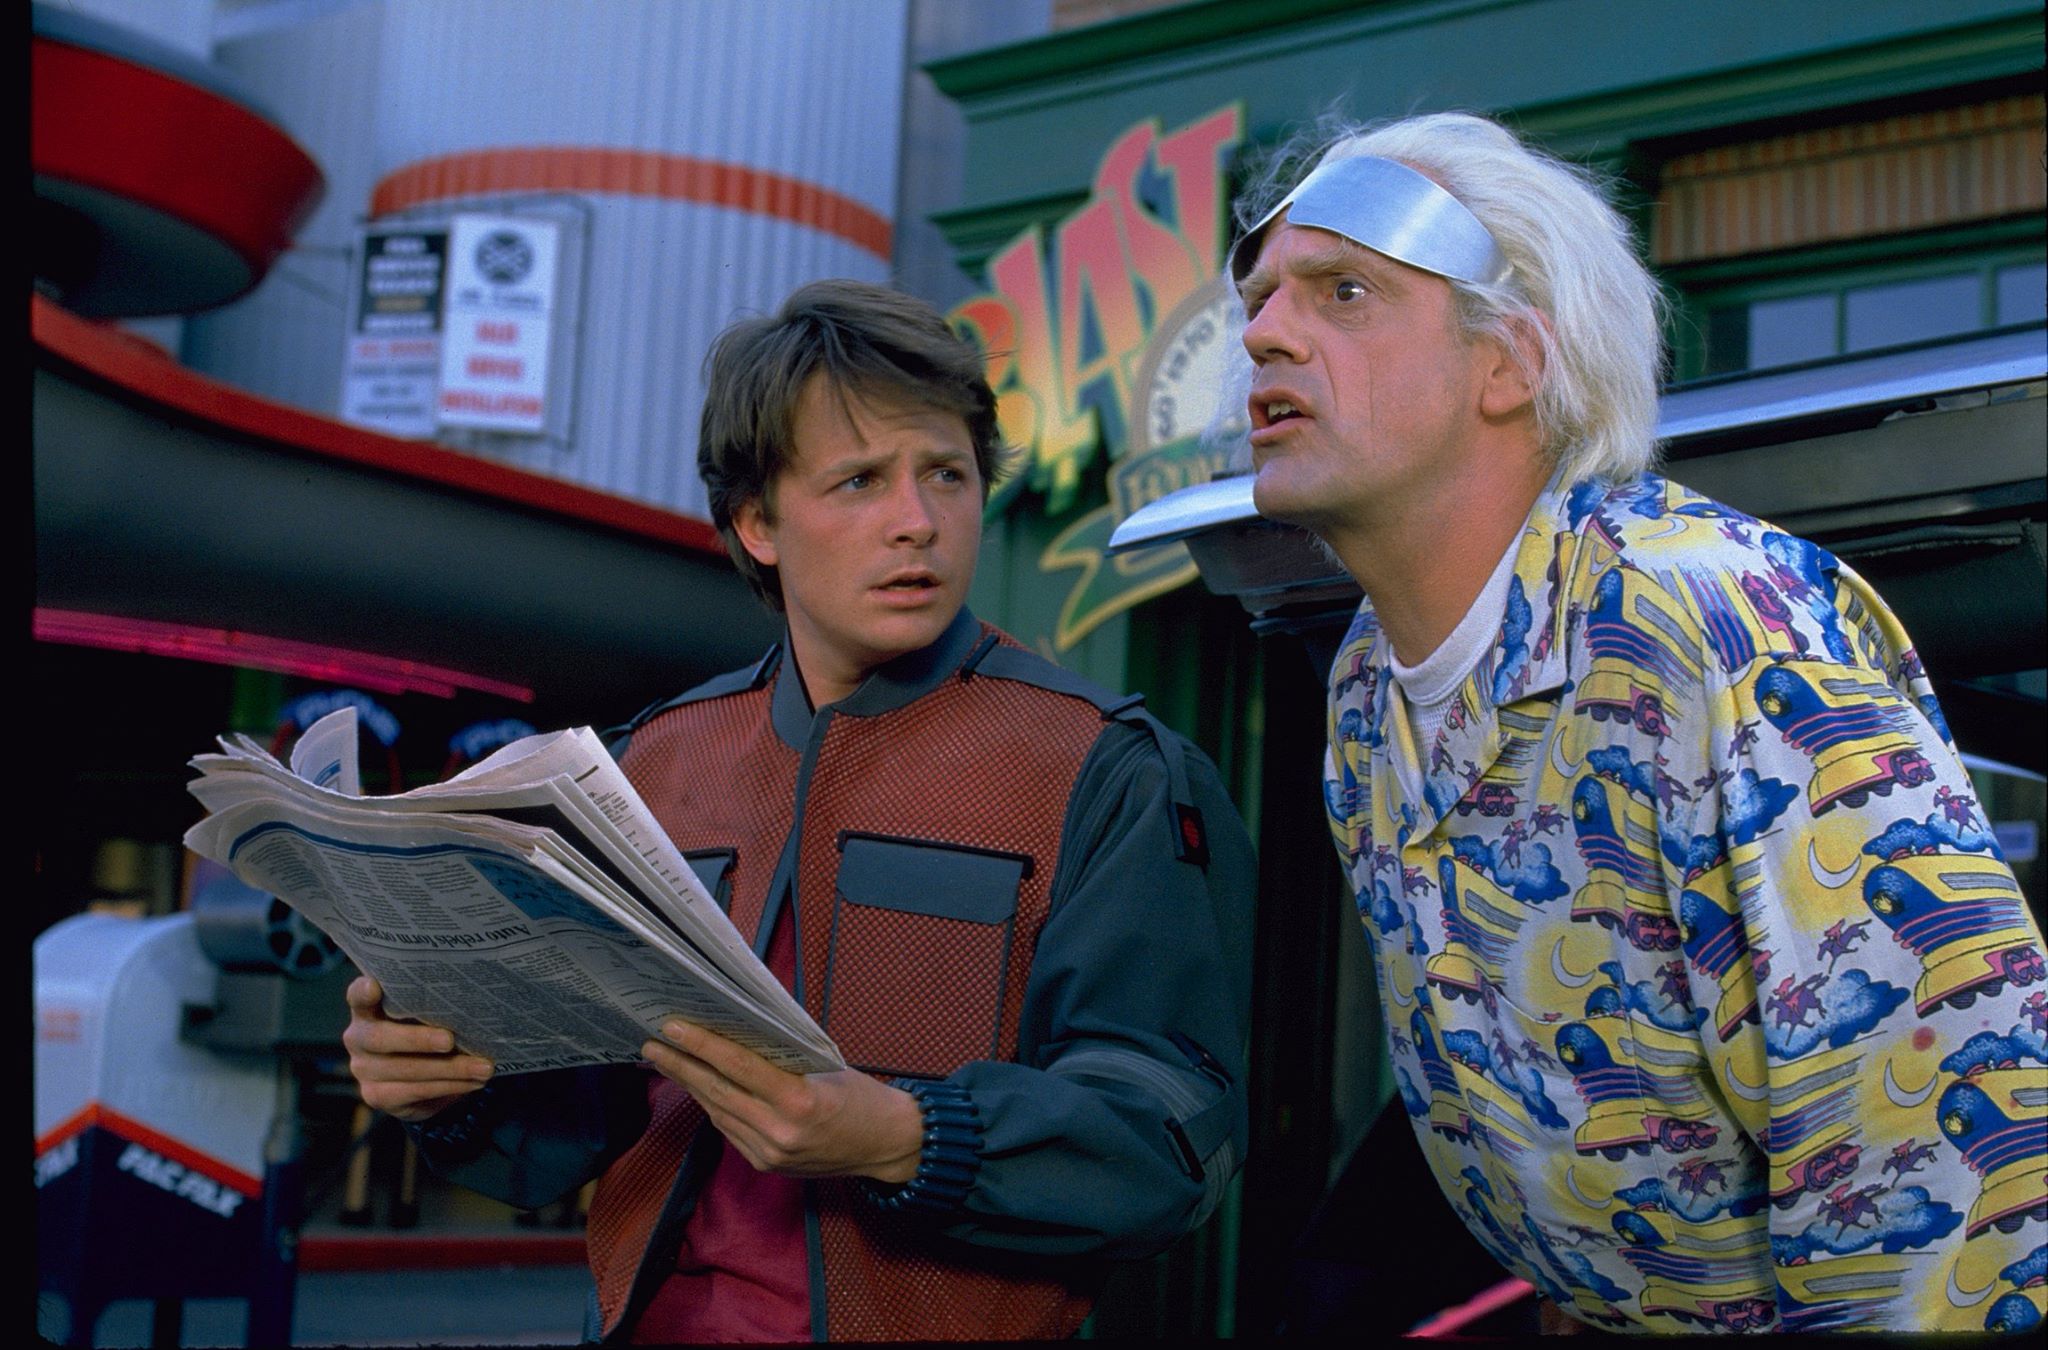 Los protagonistas de la cinta Michael J. Fox y Christopher Lloyd conversarán cada uno desde sus casas. (Foto Prensa Libre: FB Back to the Future Trilogy)